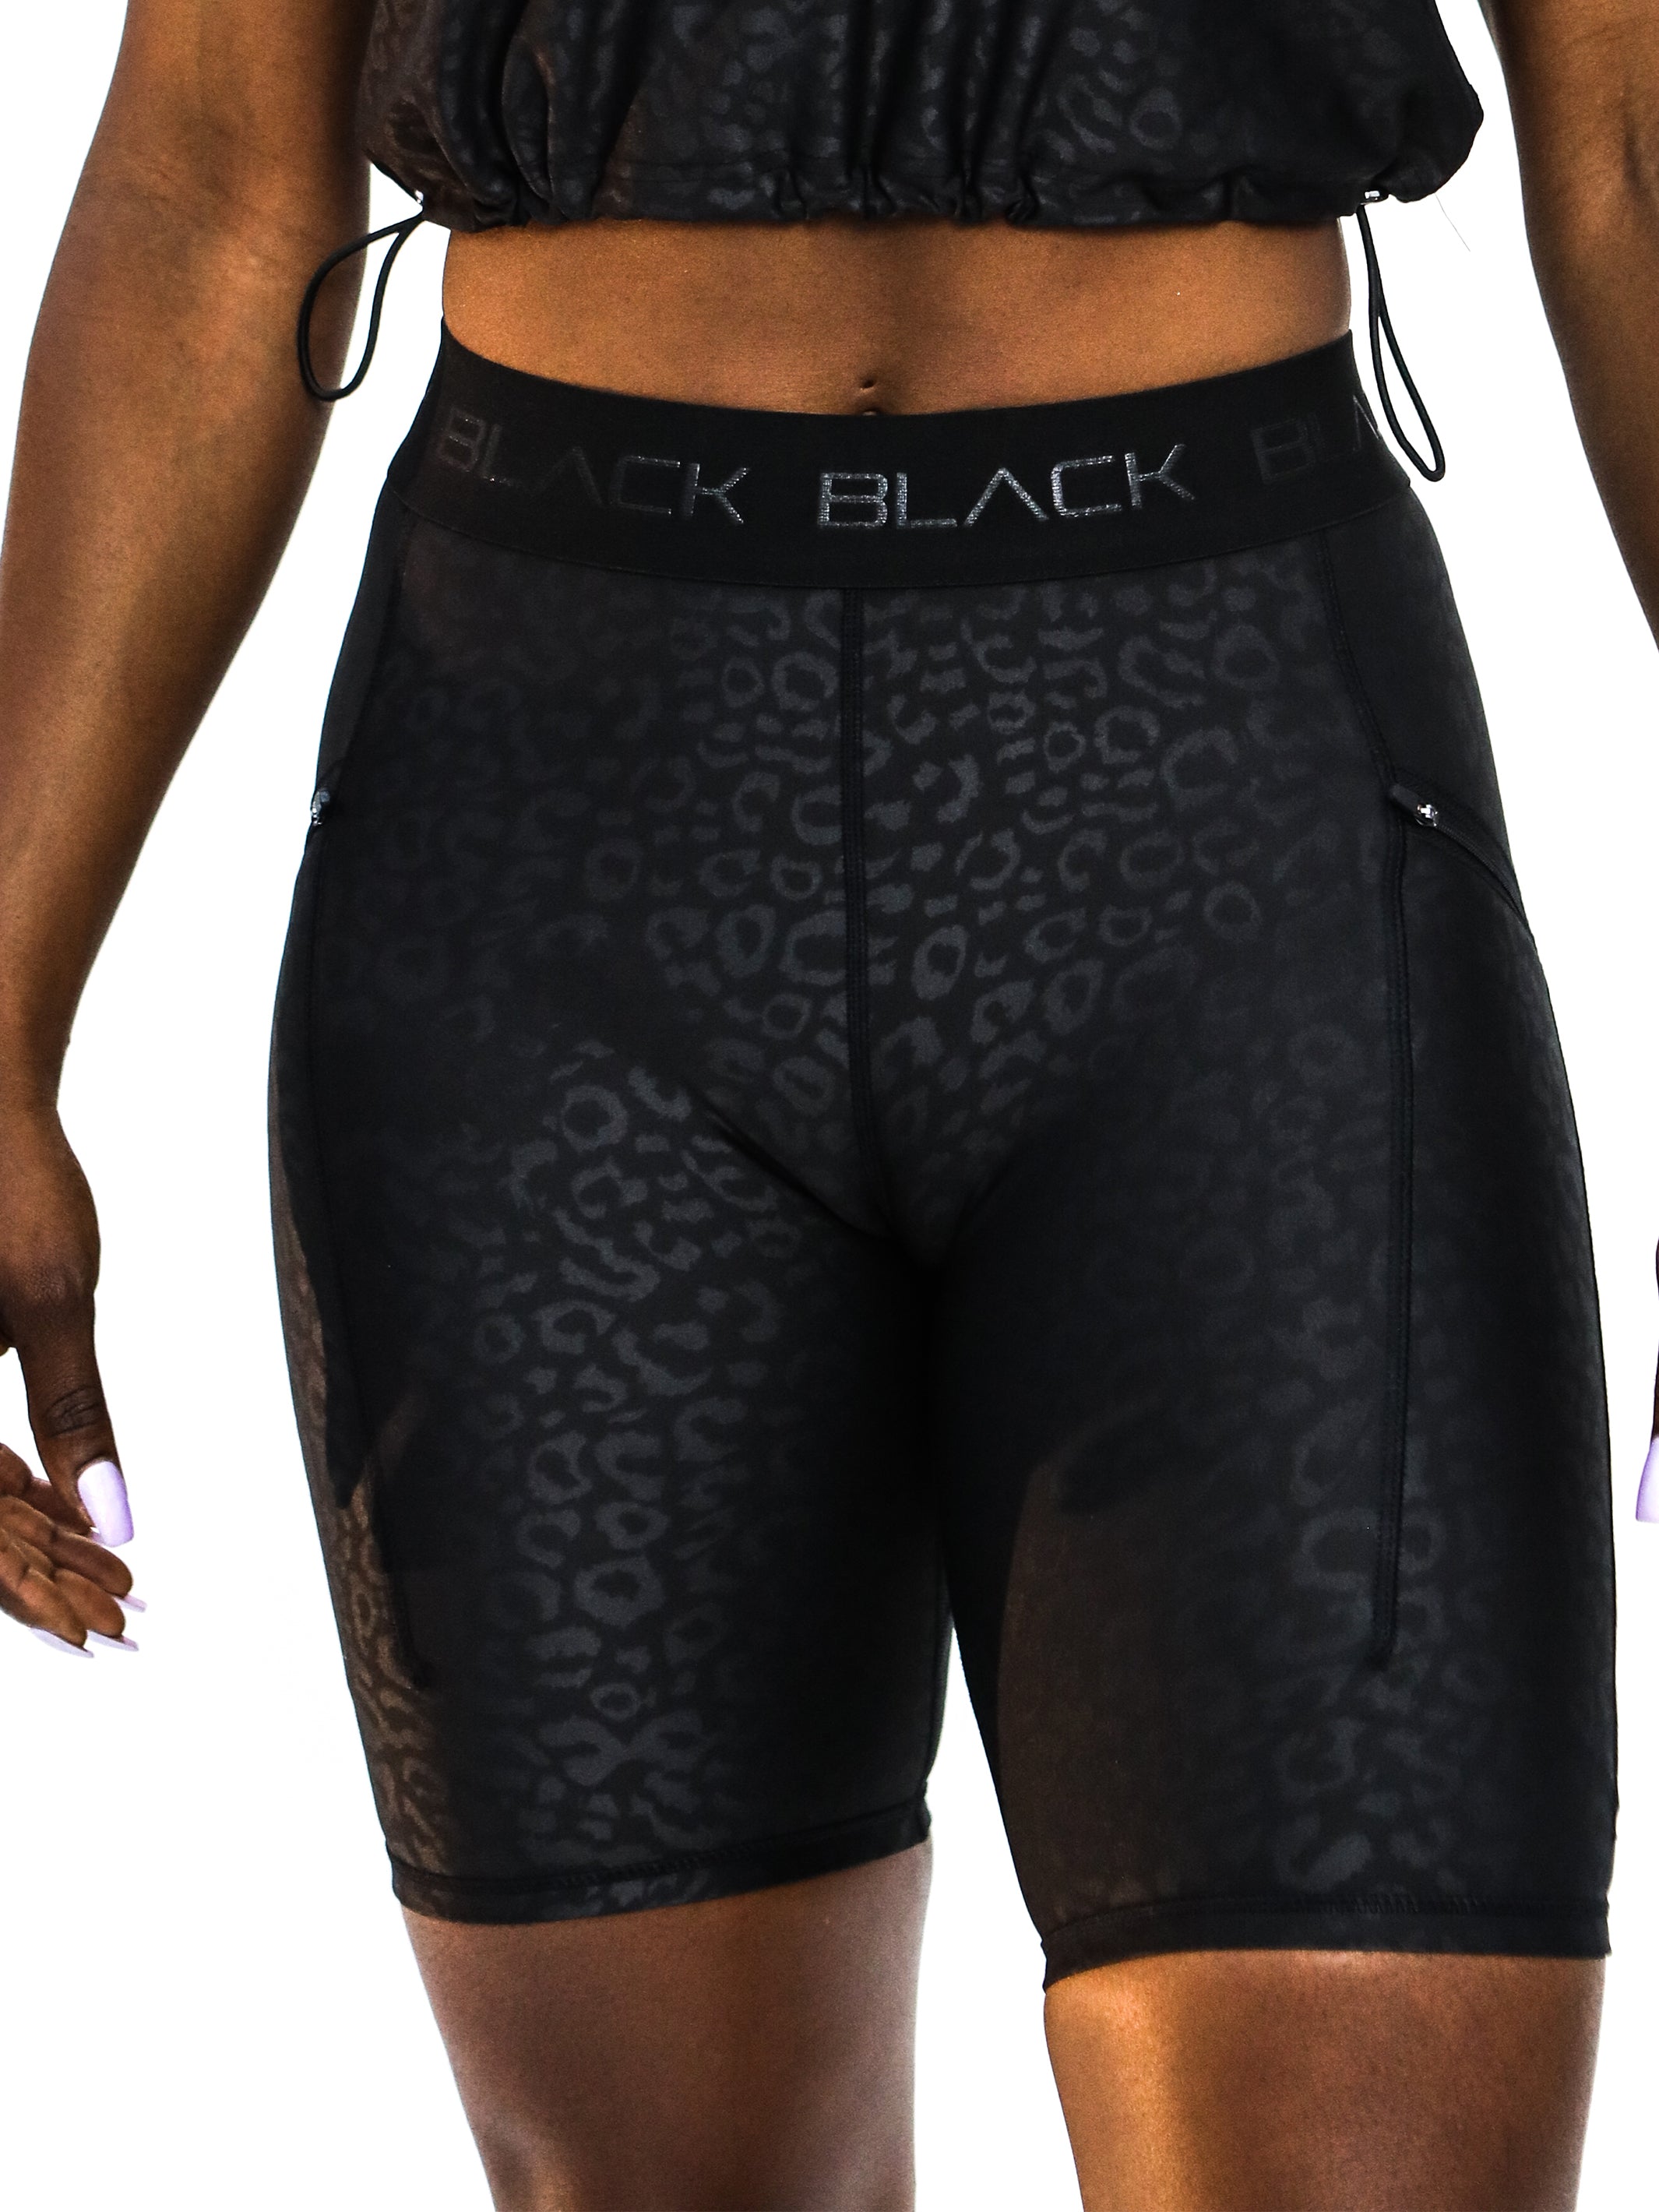 Women's Black Leopard Biker Shorts